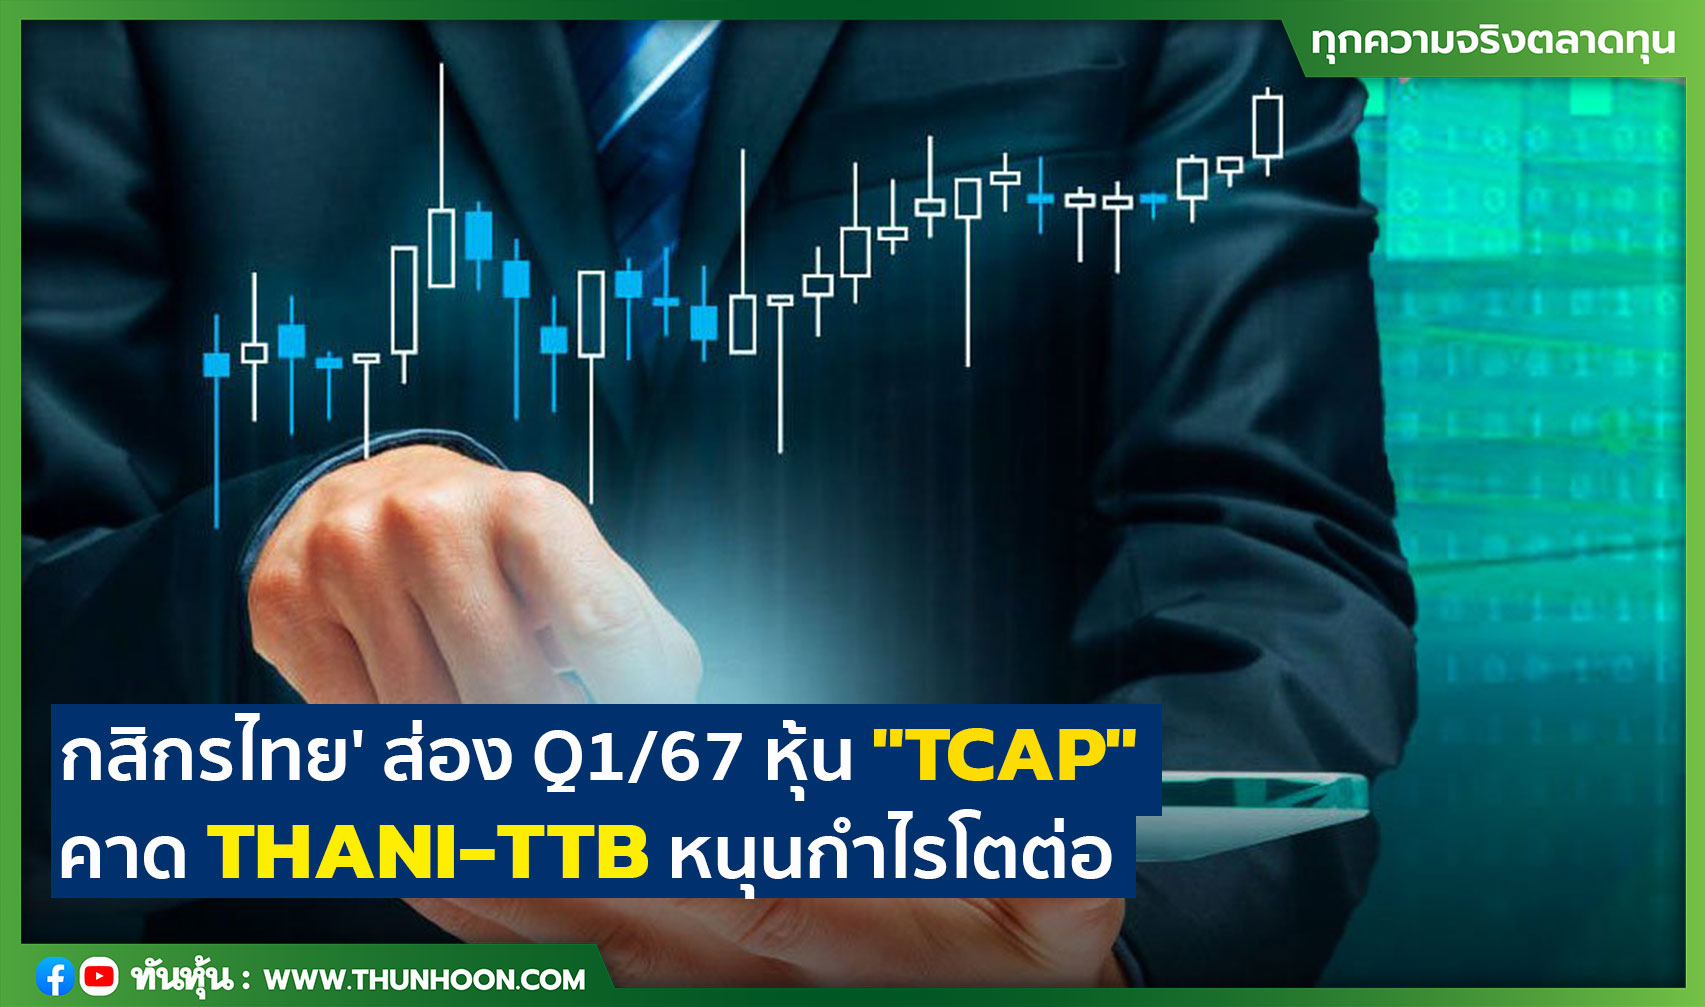 'กสิกรไทย' ส่อง Q1/67 หุ้น "TCAP" คาด THANI-TTB หนุนกำไรโตต่อ